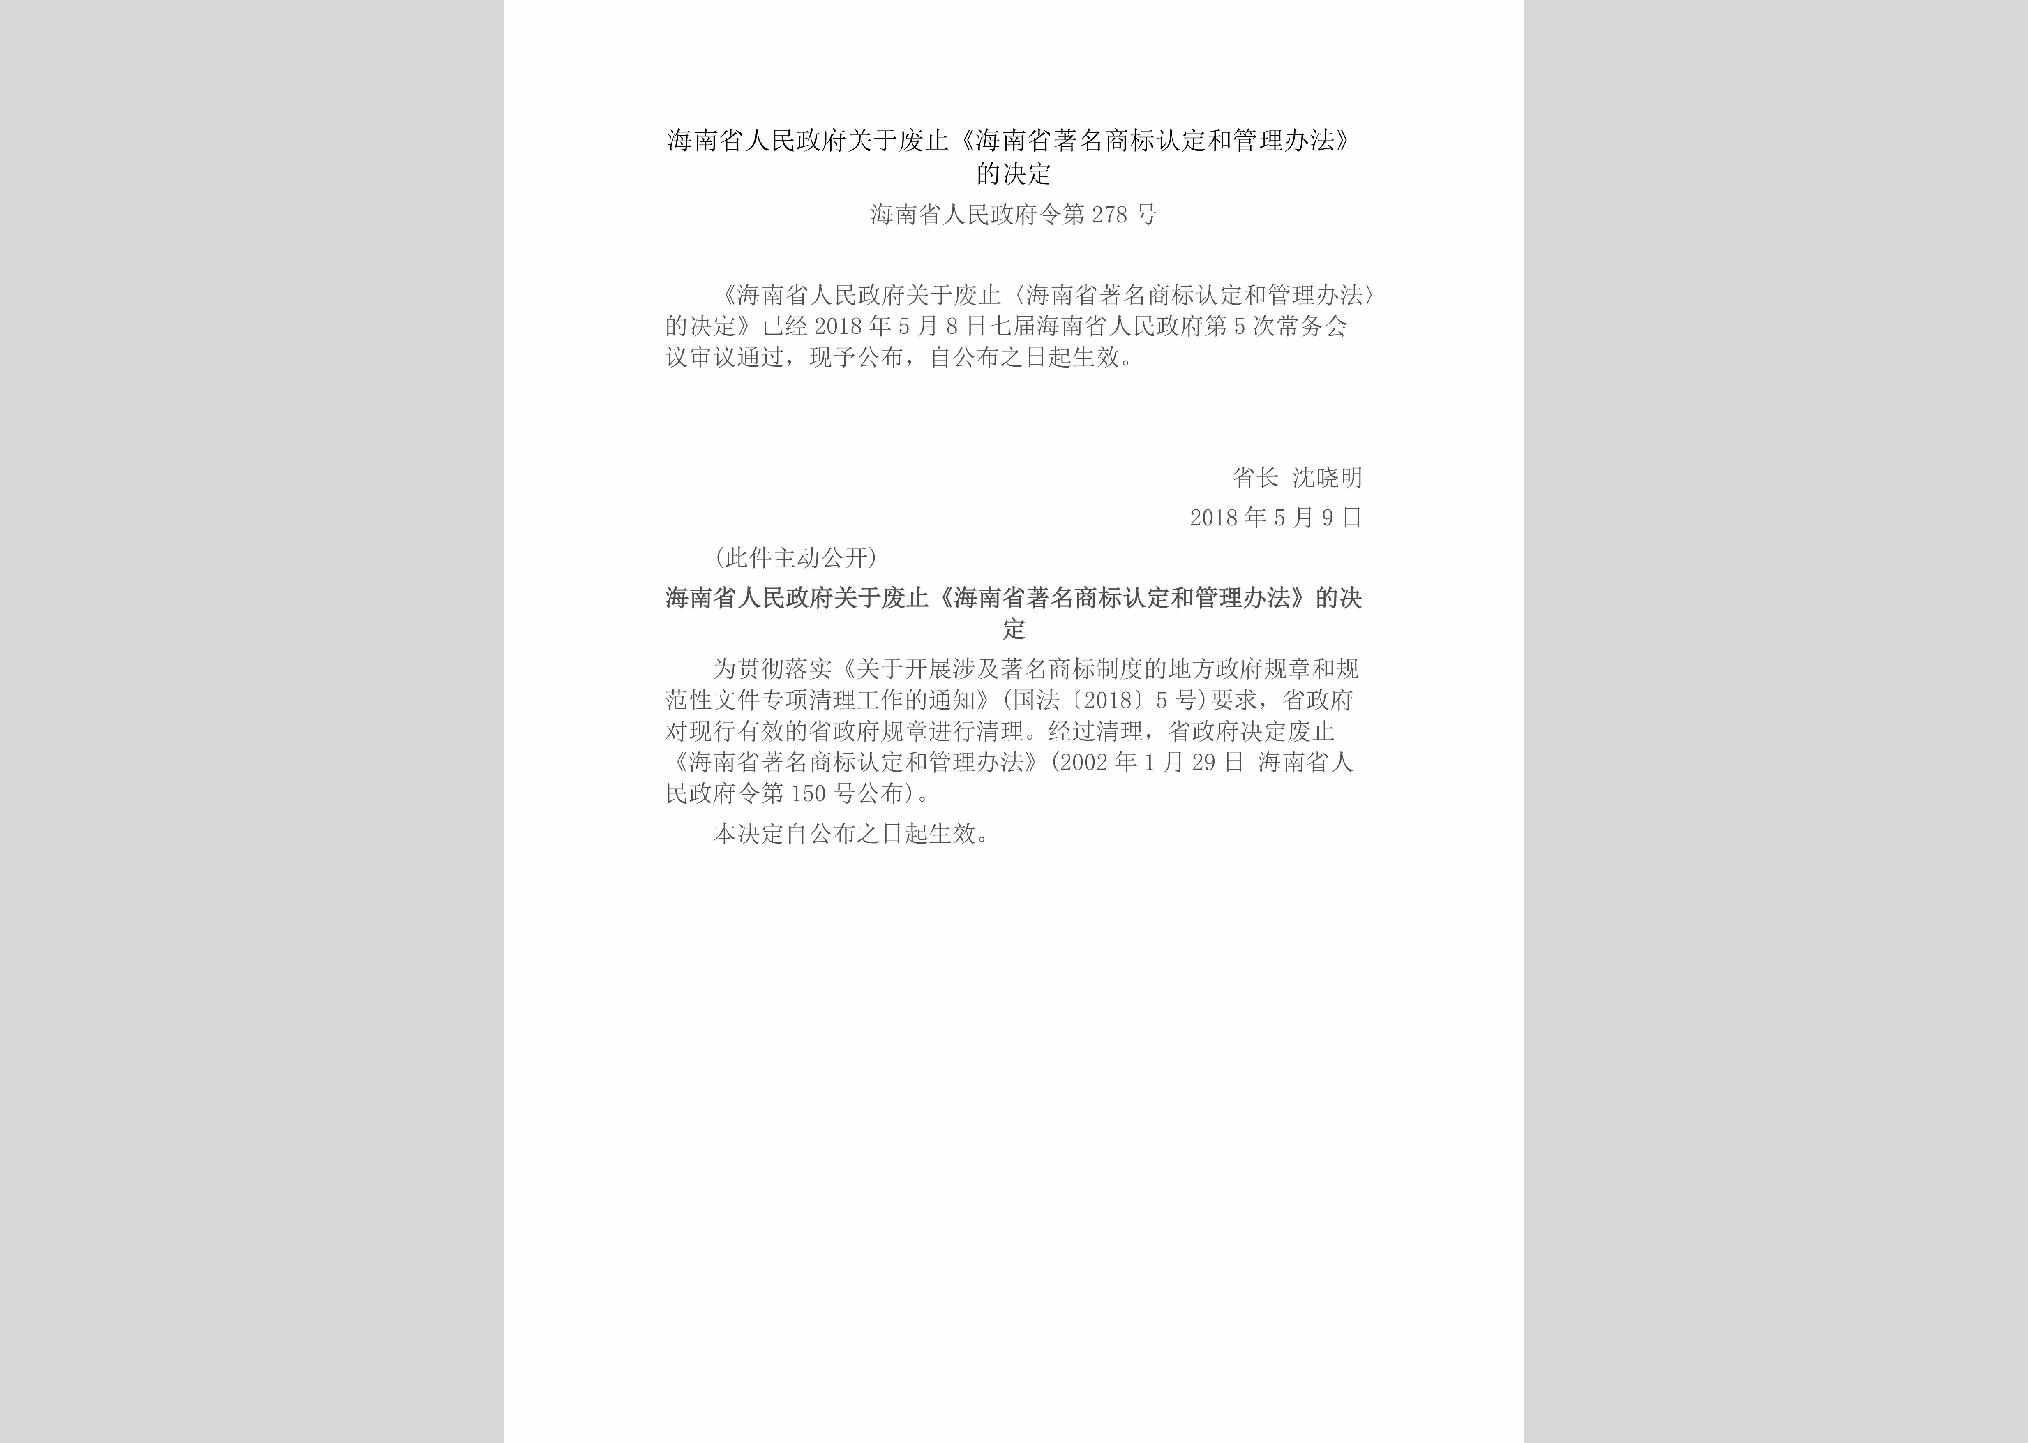 海南省人民政府令第278号：海南省人民政府关于废止《海南省著名商标认定和管理办法》的决定